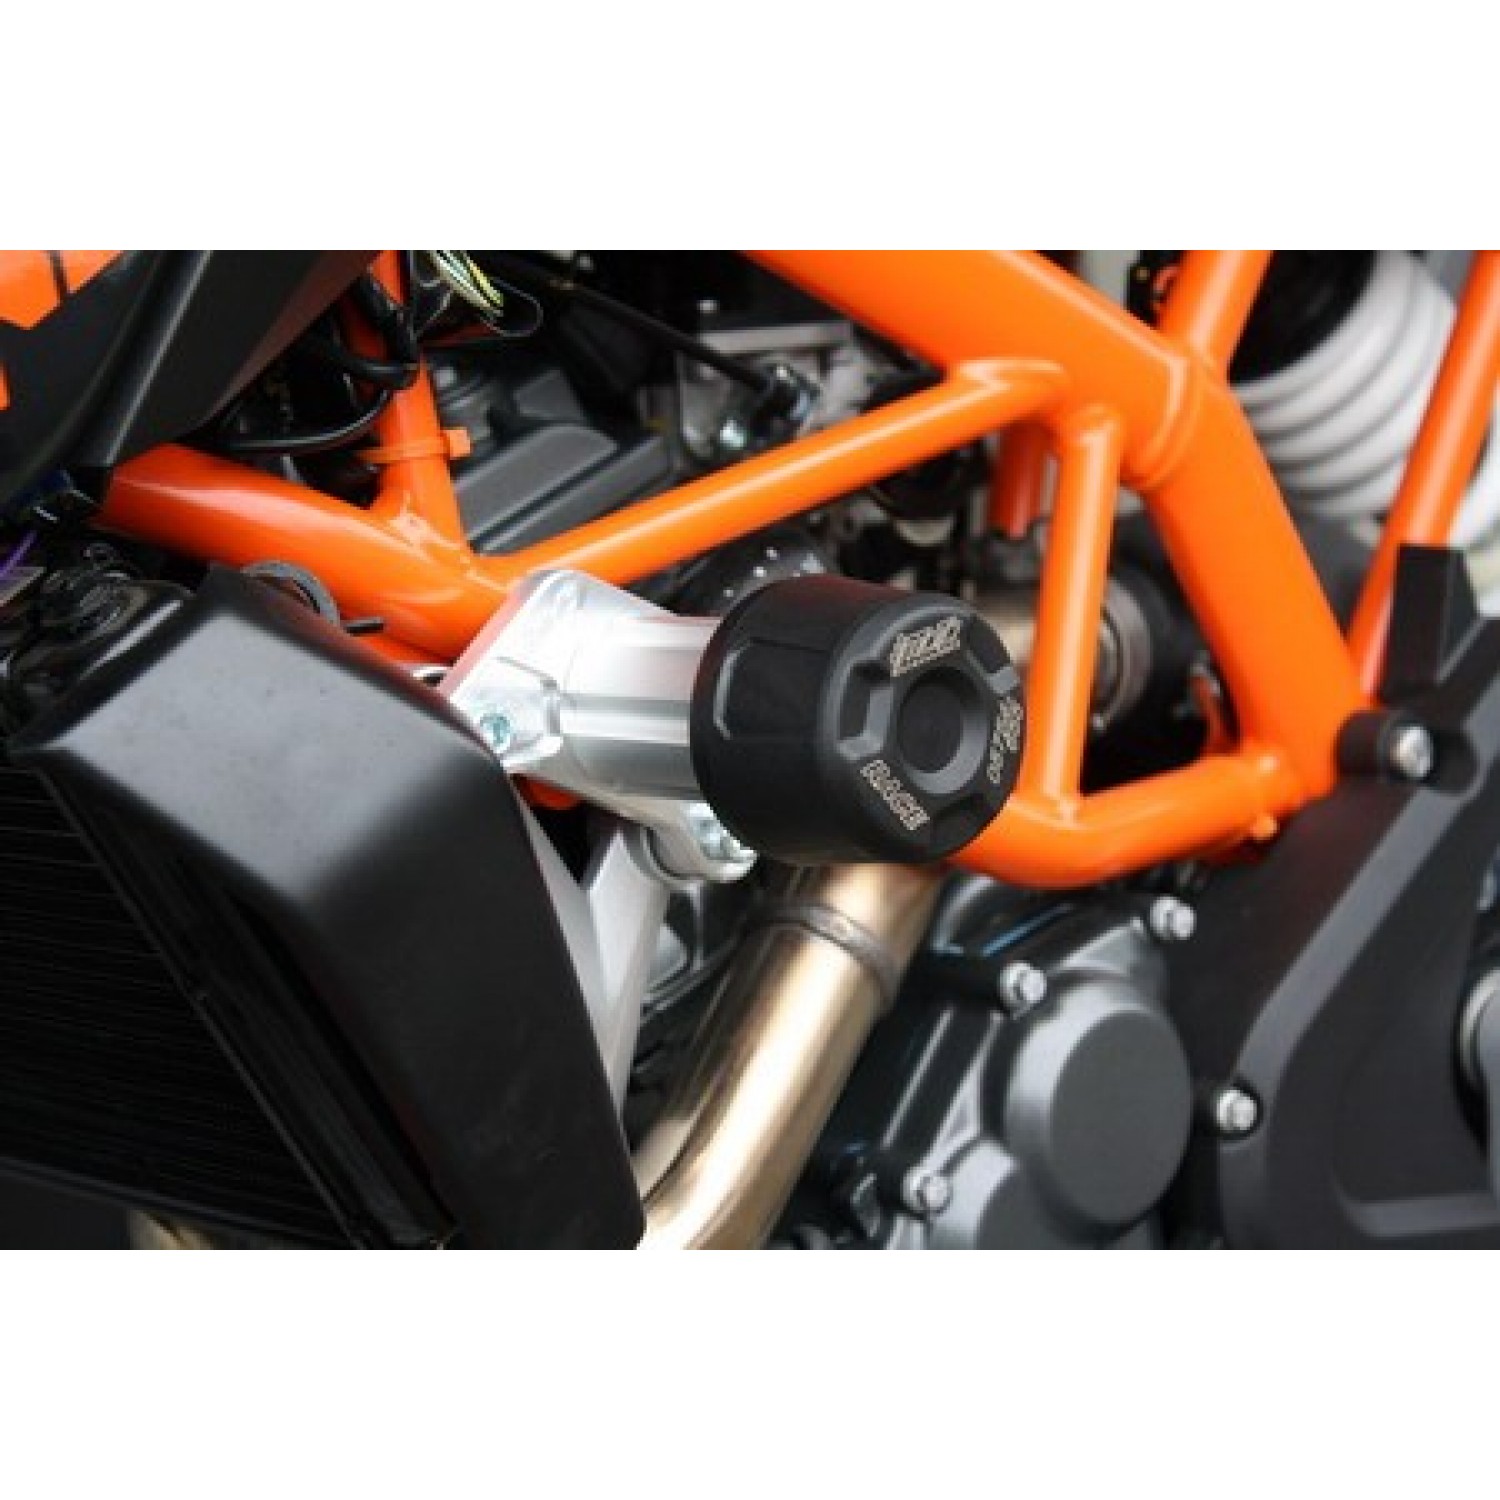 MeterMall Couvercle de Capuchon de réservoir de Frein de Moto pour KTM DUKE250/390 RC390 Orange 